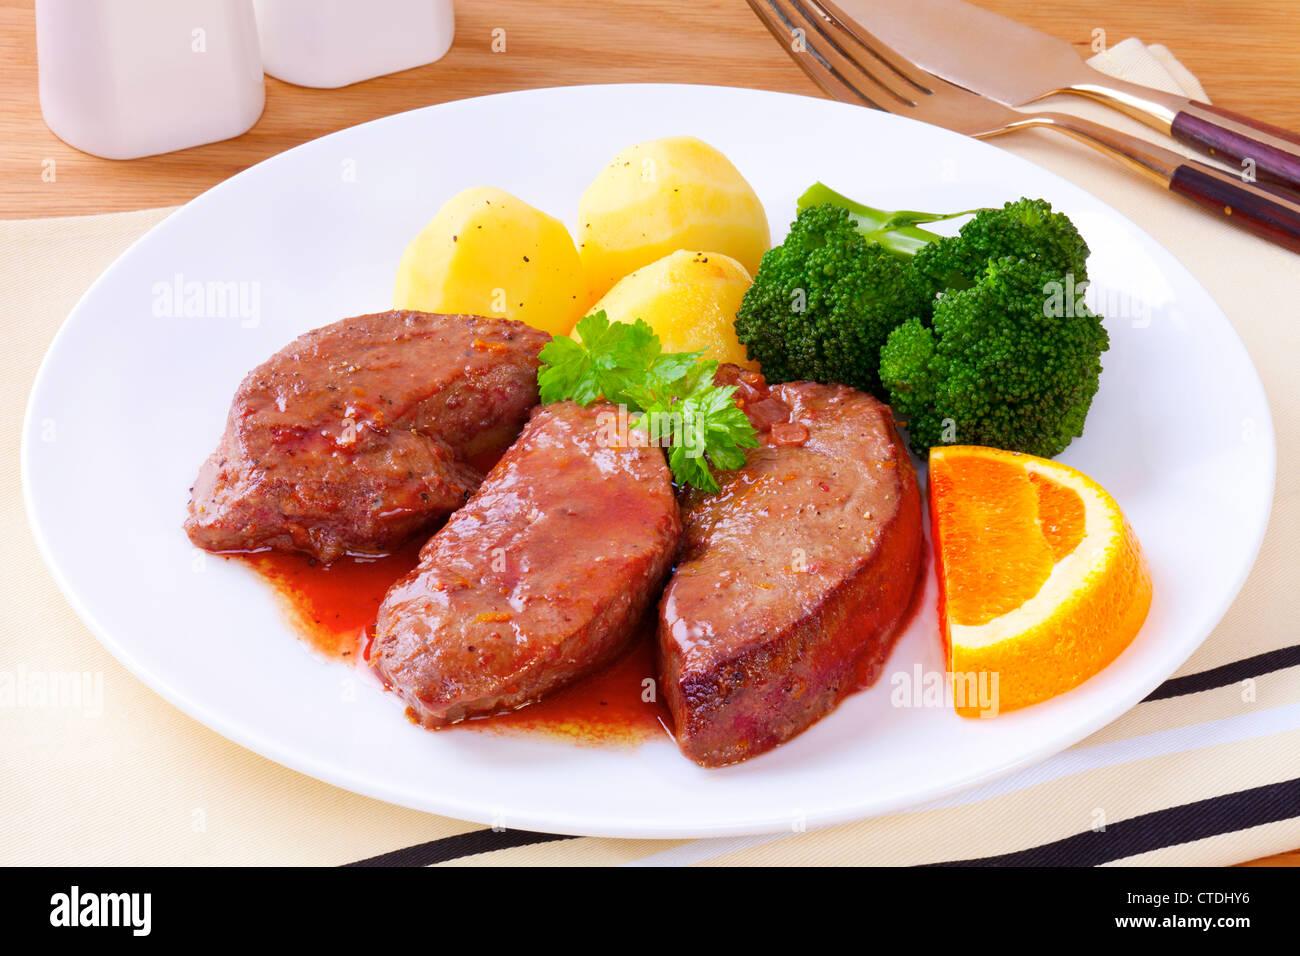 El hígado de cordero o cordero fry, cocinados en una salsa de vino y de naranja, servido con patatas y brócoli. Foto de stock